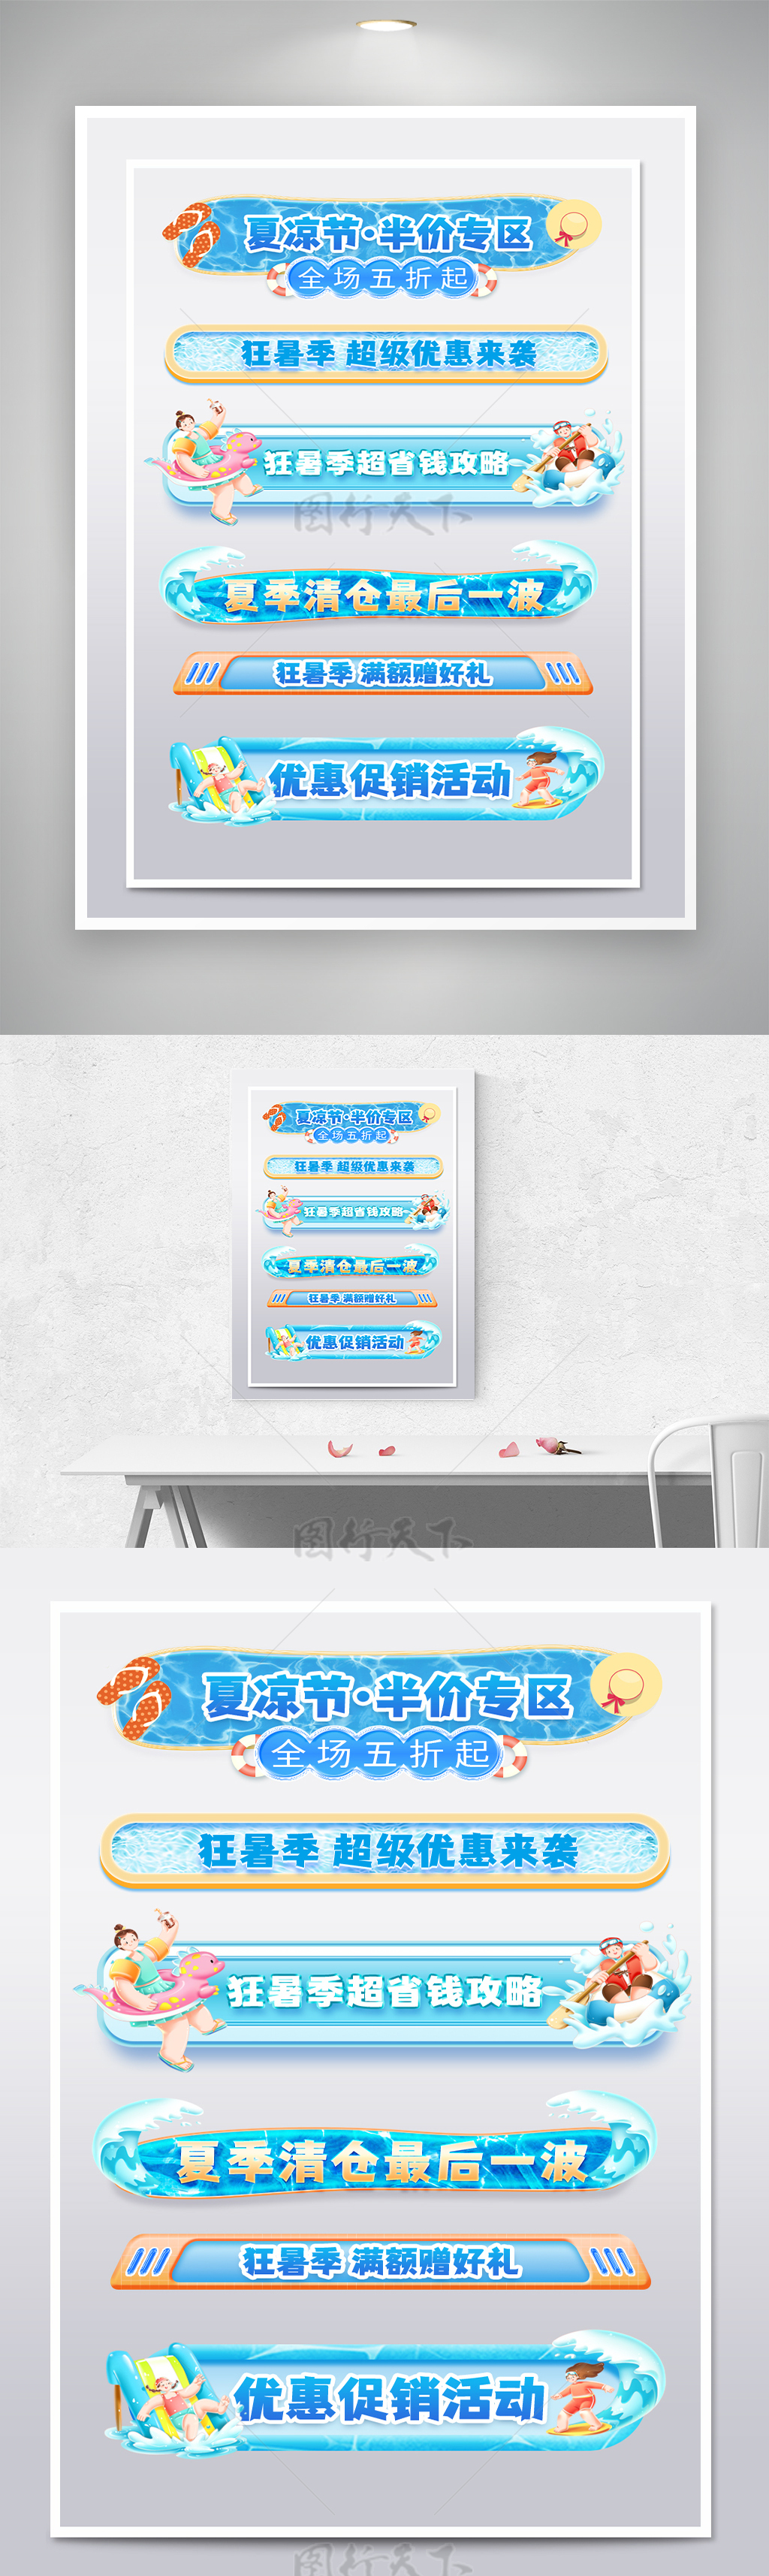 蓝色狂暑季横栏分栏促销标签设计模板